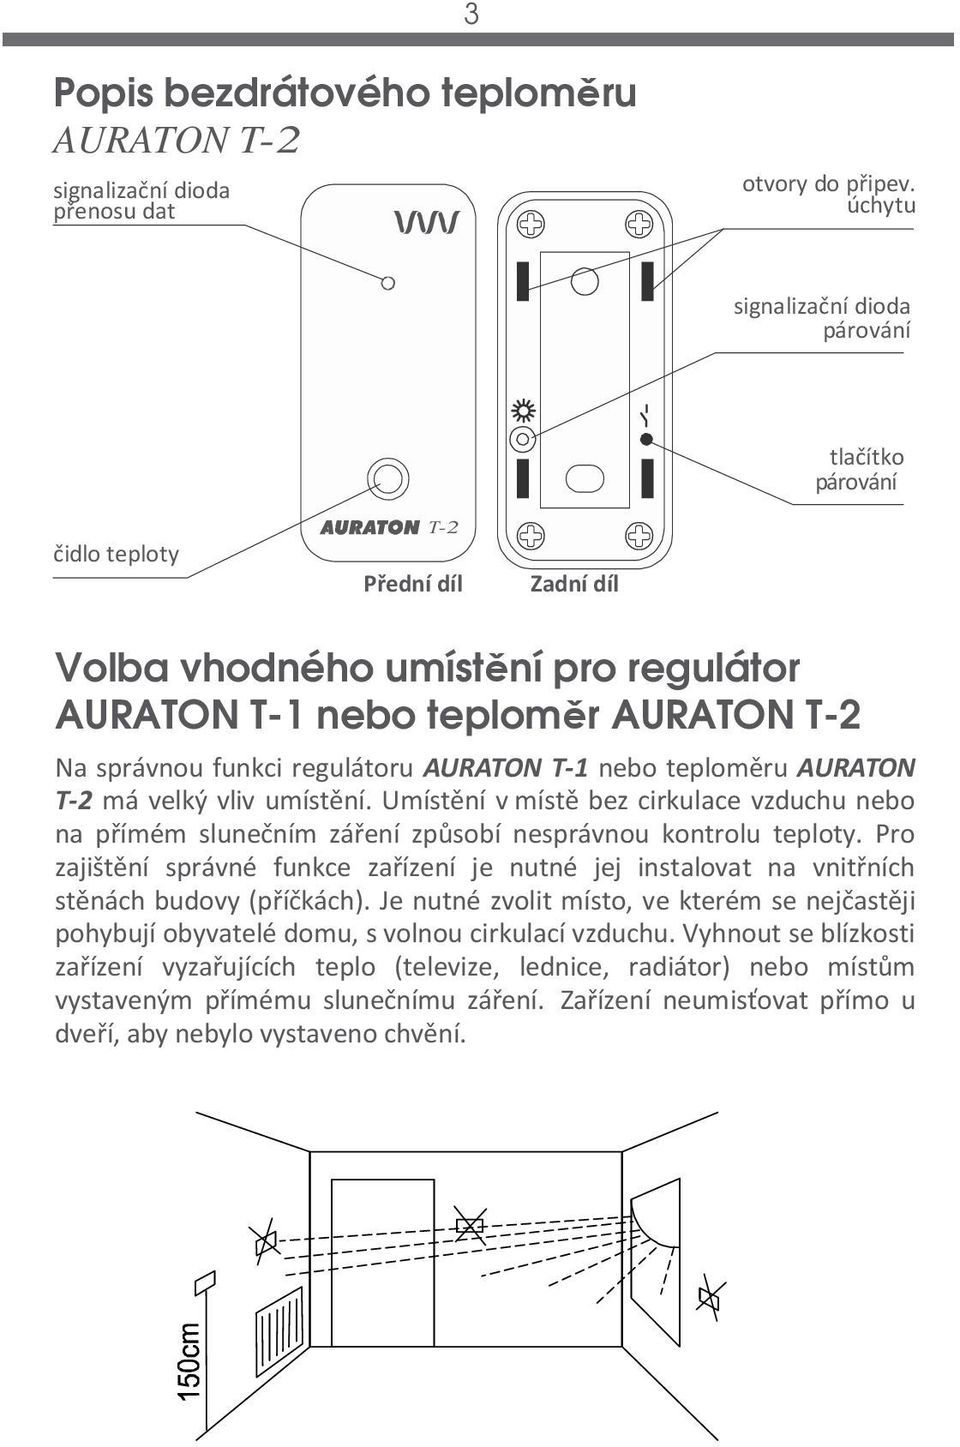 AURATON T-1 nebo teploměru AURATON T-2 má velký vliv umístění. Umístění v místě bez cirkulace vzduchu nebo na přímém slunečním záření způsobí nesprávnou kontrolu teploty.